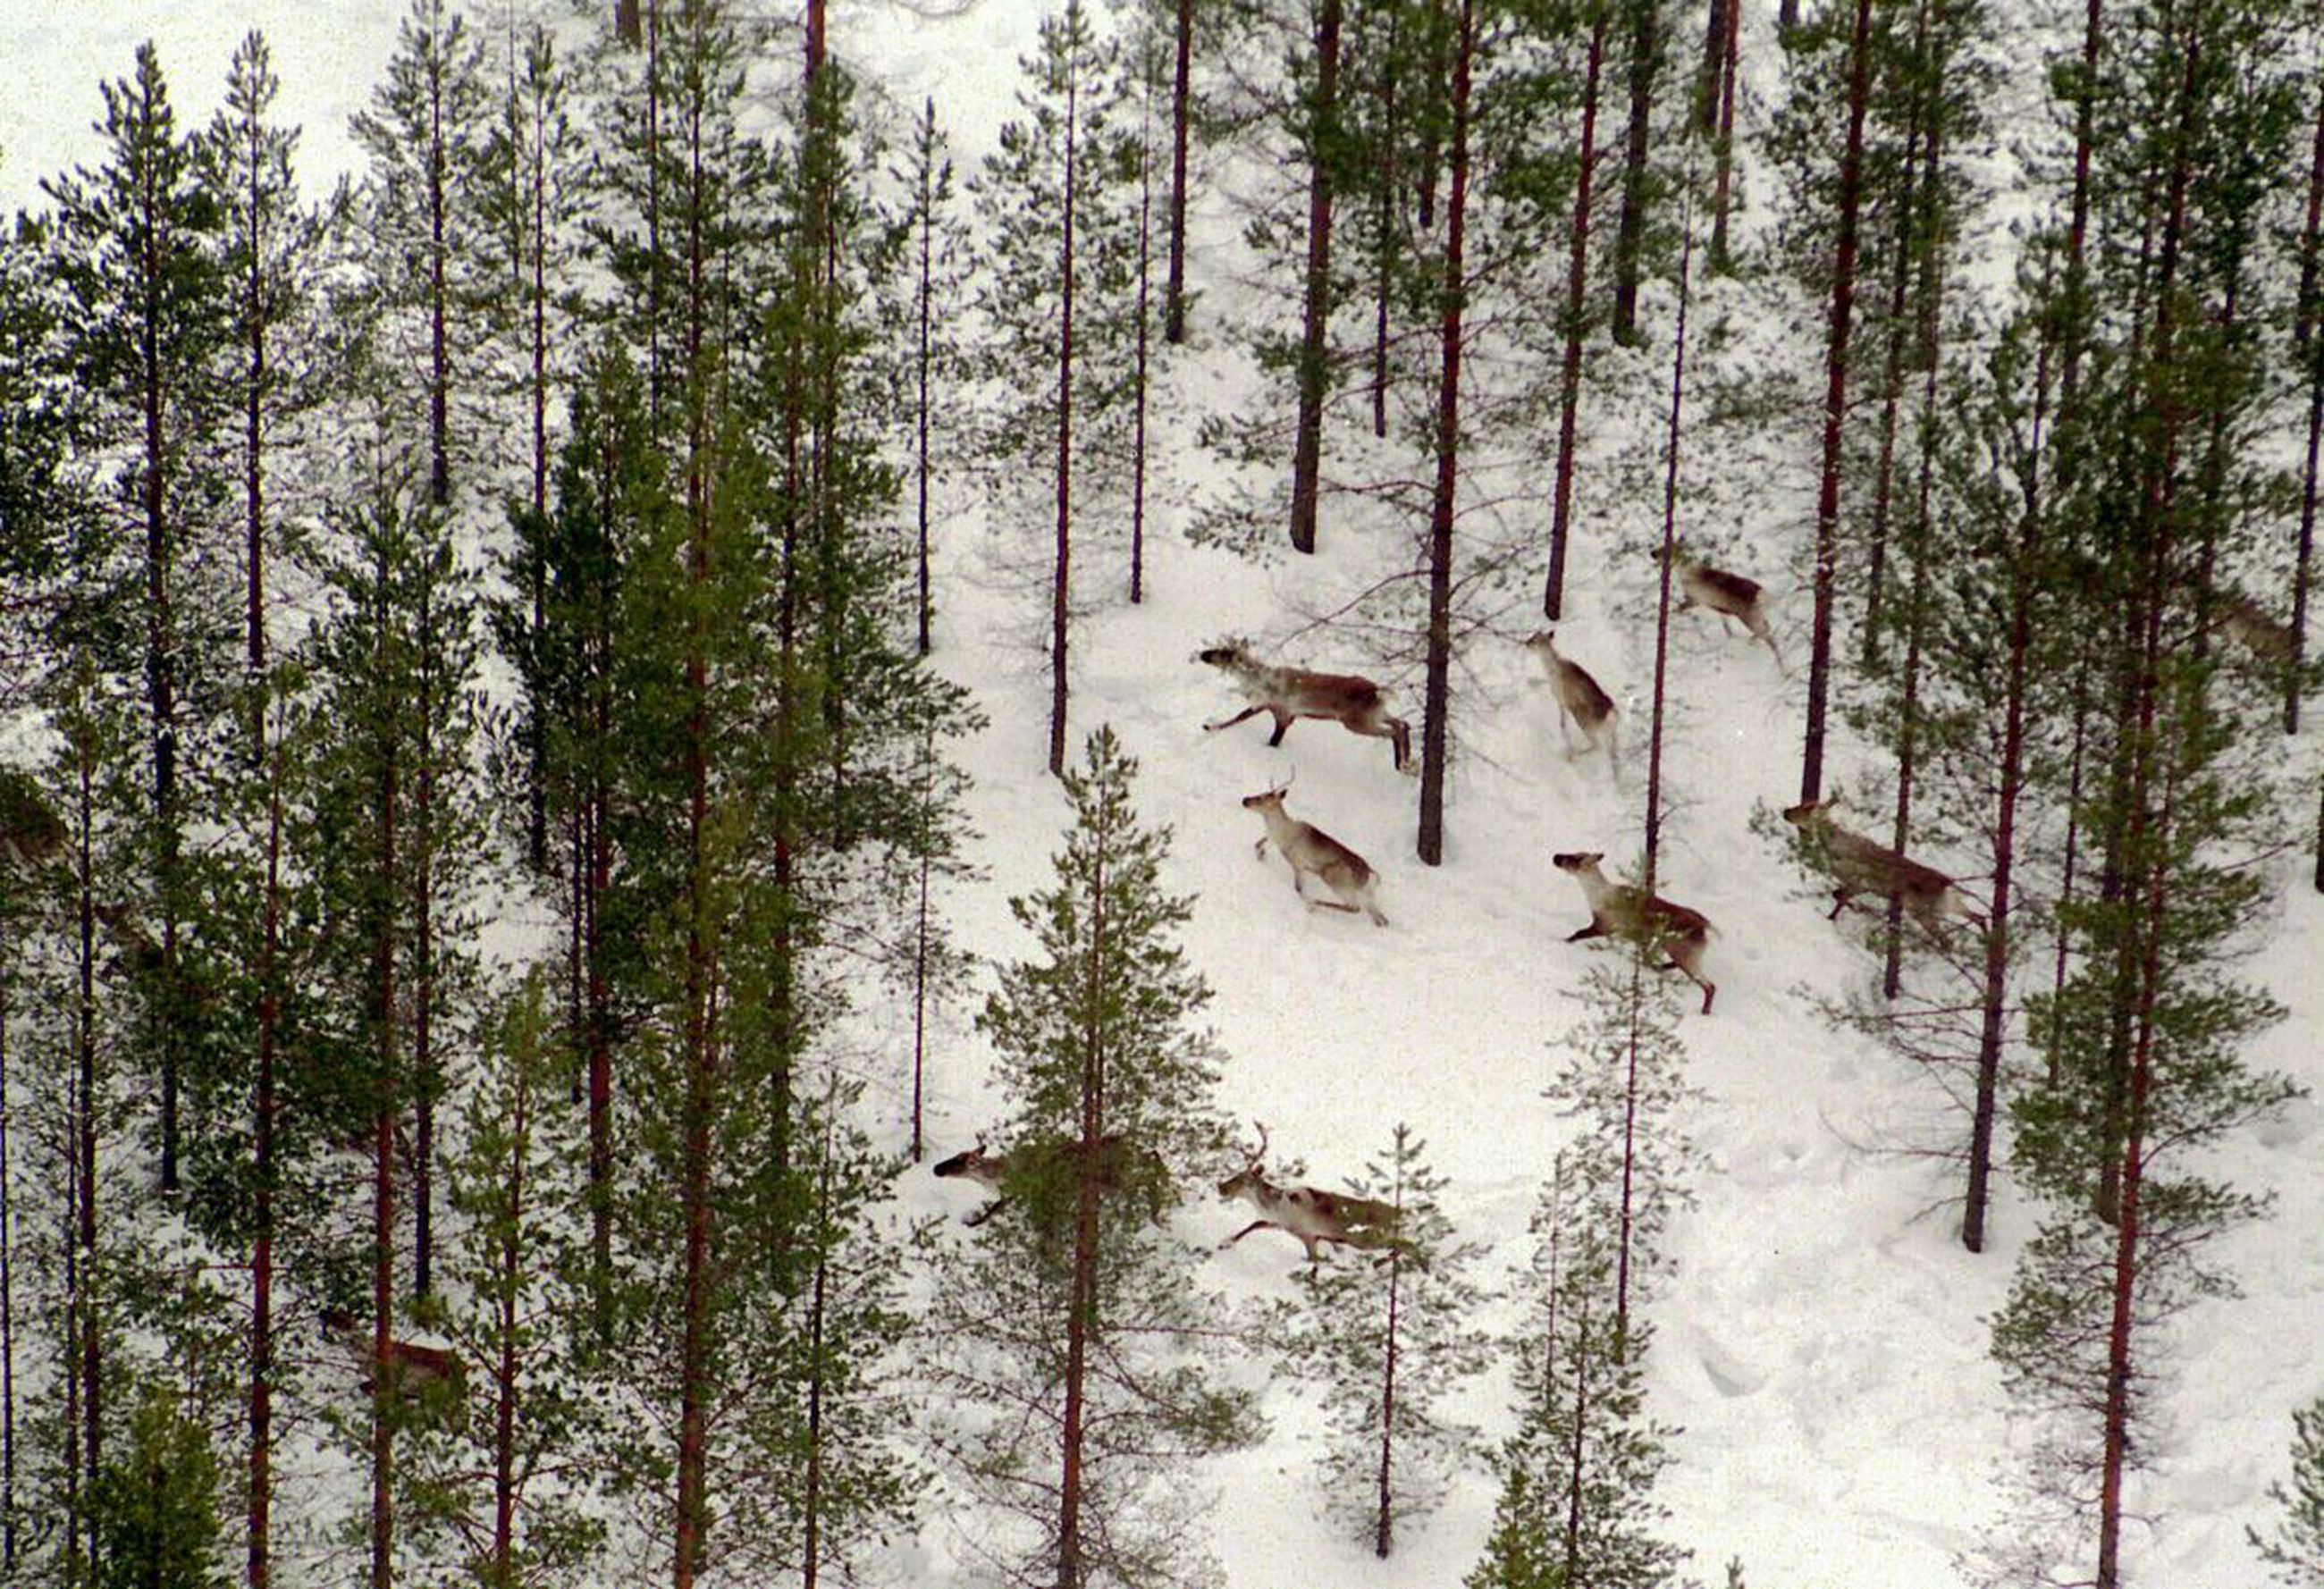 Kainuun metsäpeurakanta jatkaa lievää kasvuaan – Suurimmat peuratiheydet  Ristijärvellä ja Sotkamossa | Koillissanomat